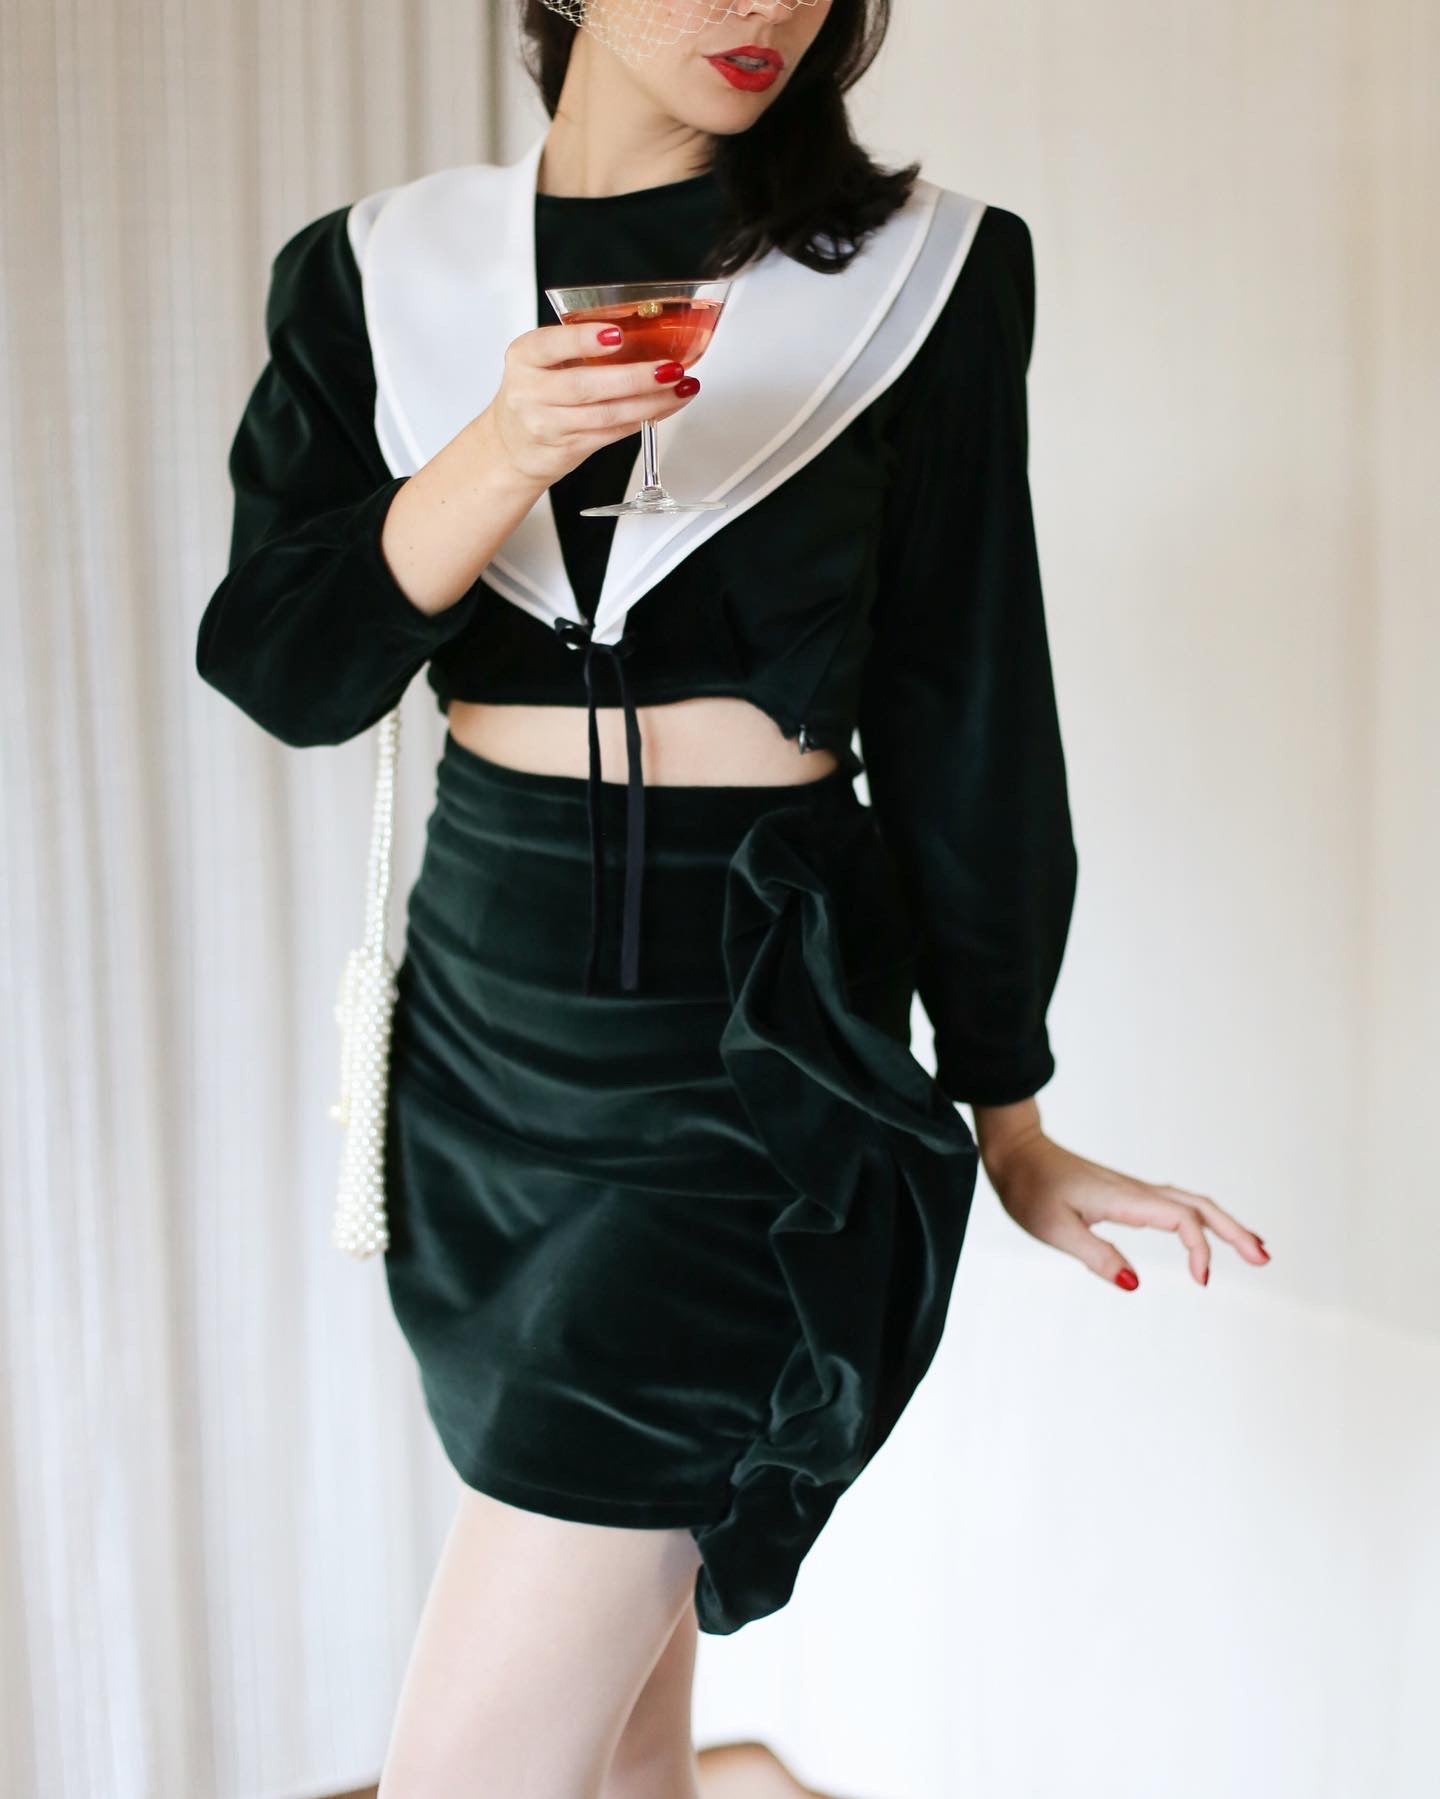 Velvet couture skirt